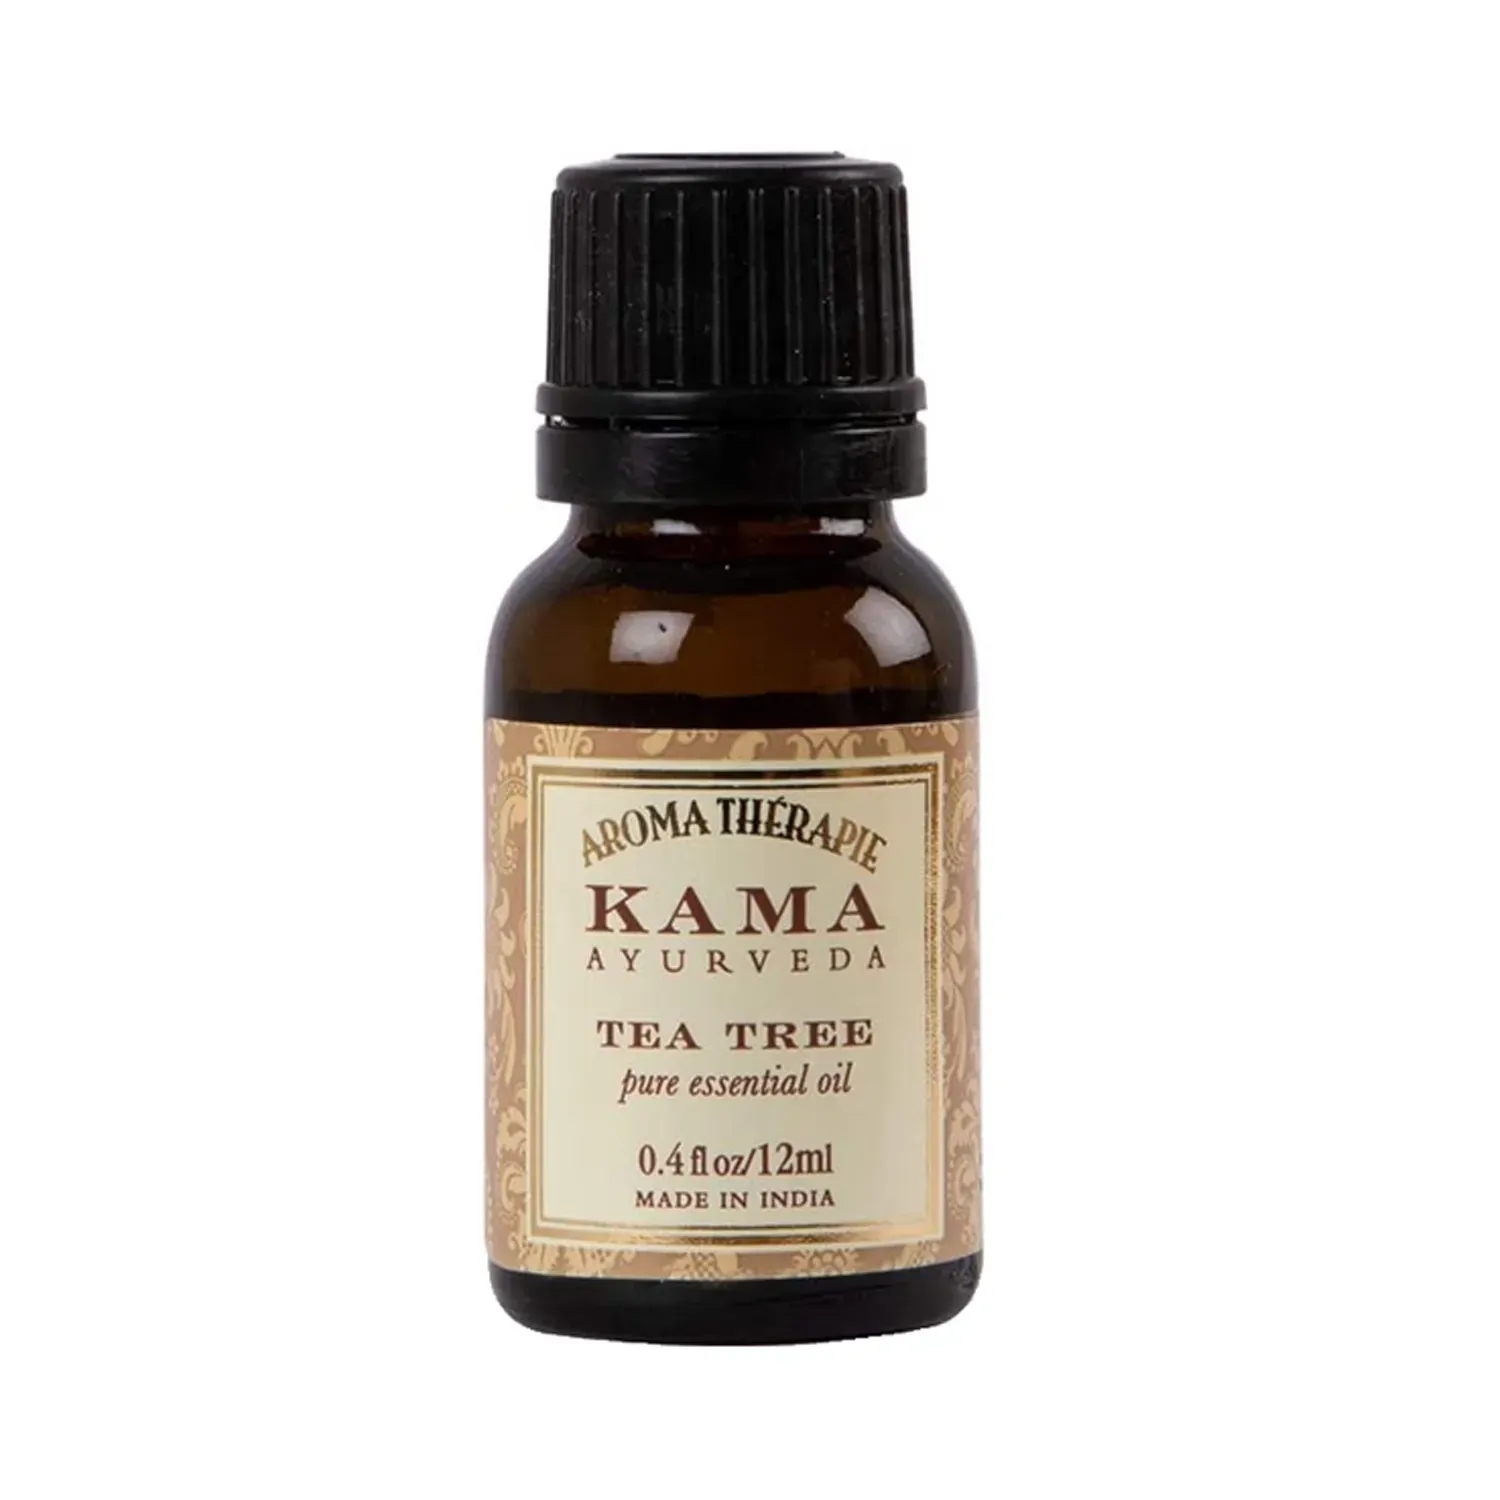 KAMA Ayurveda | KAMA Ayurveda Tea Tree Essential Oil (12ml)